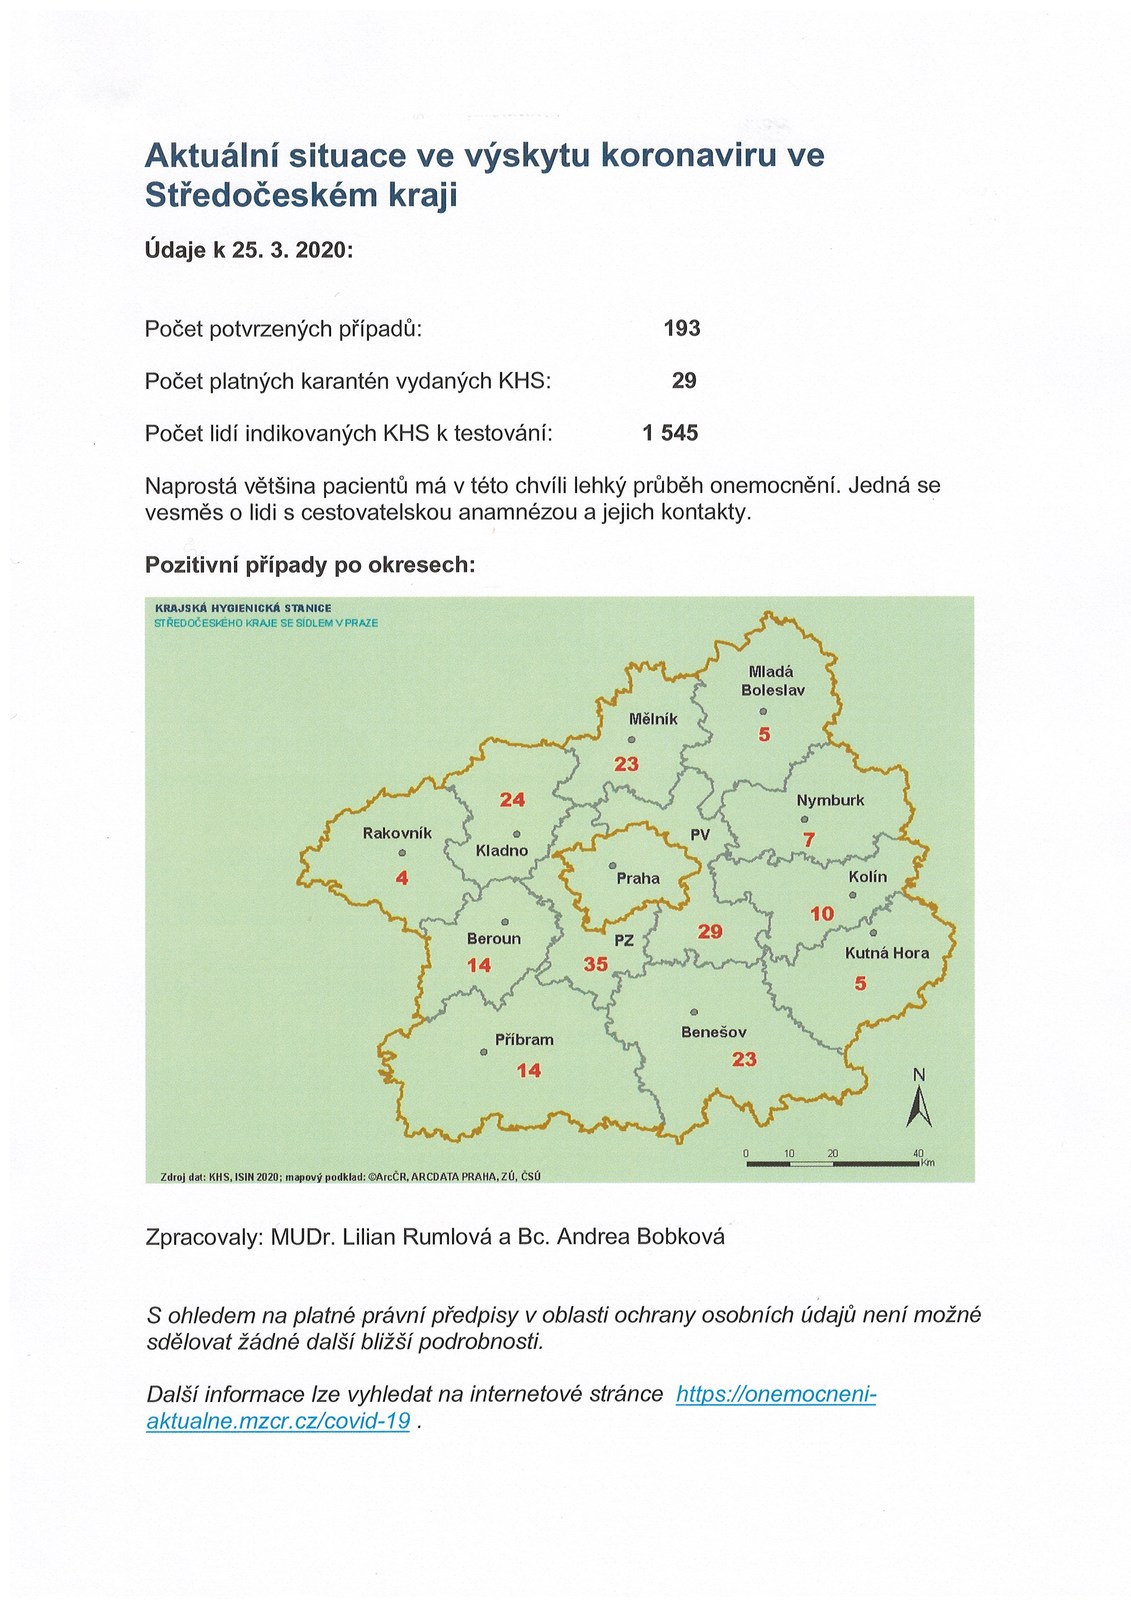 Aktuální situace ve výskytu koronaviru ve Střed.kraji - 25.3.2020.jpg